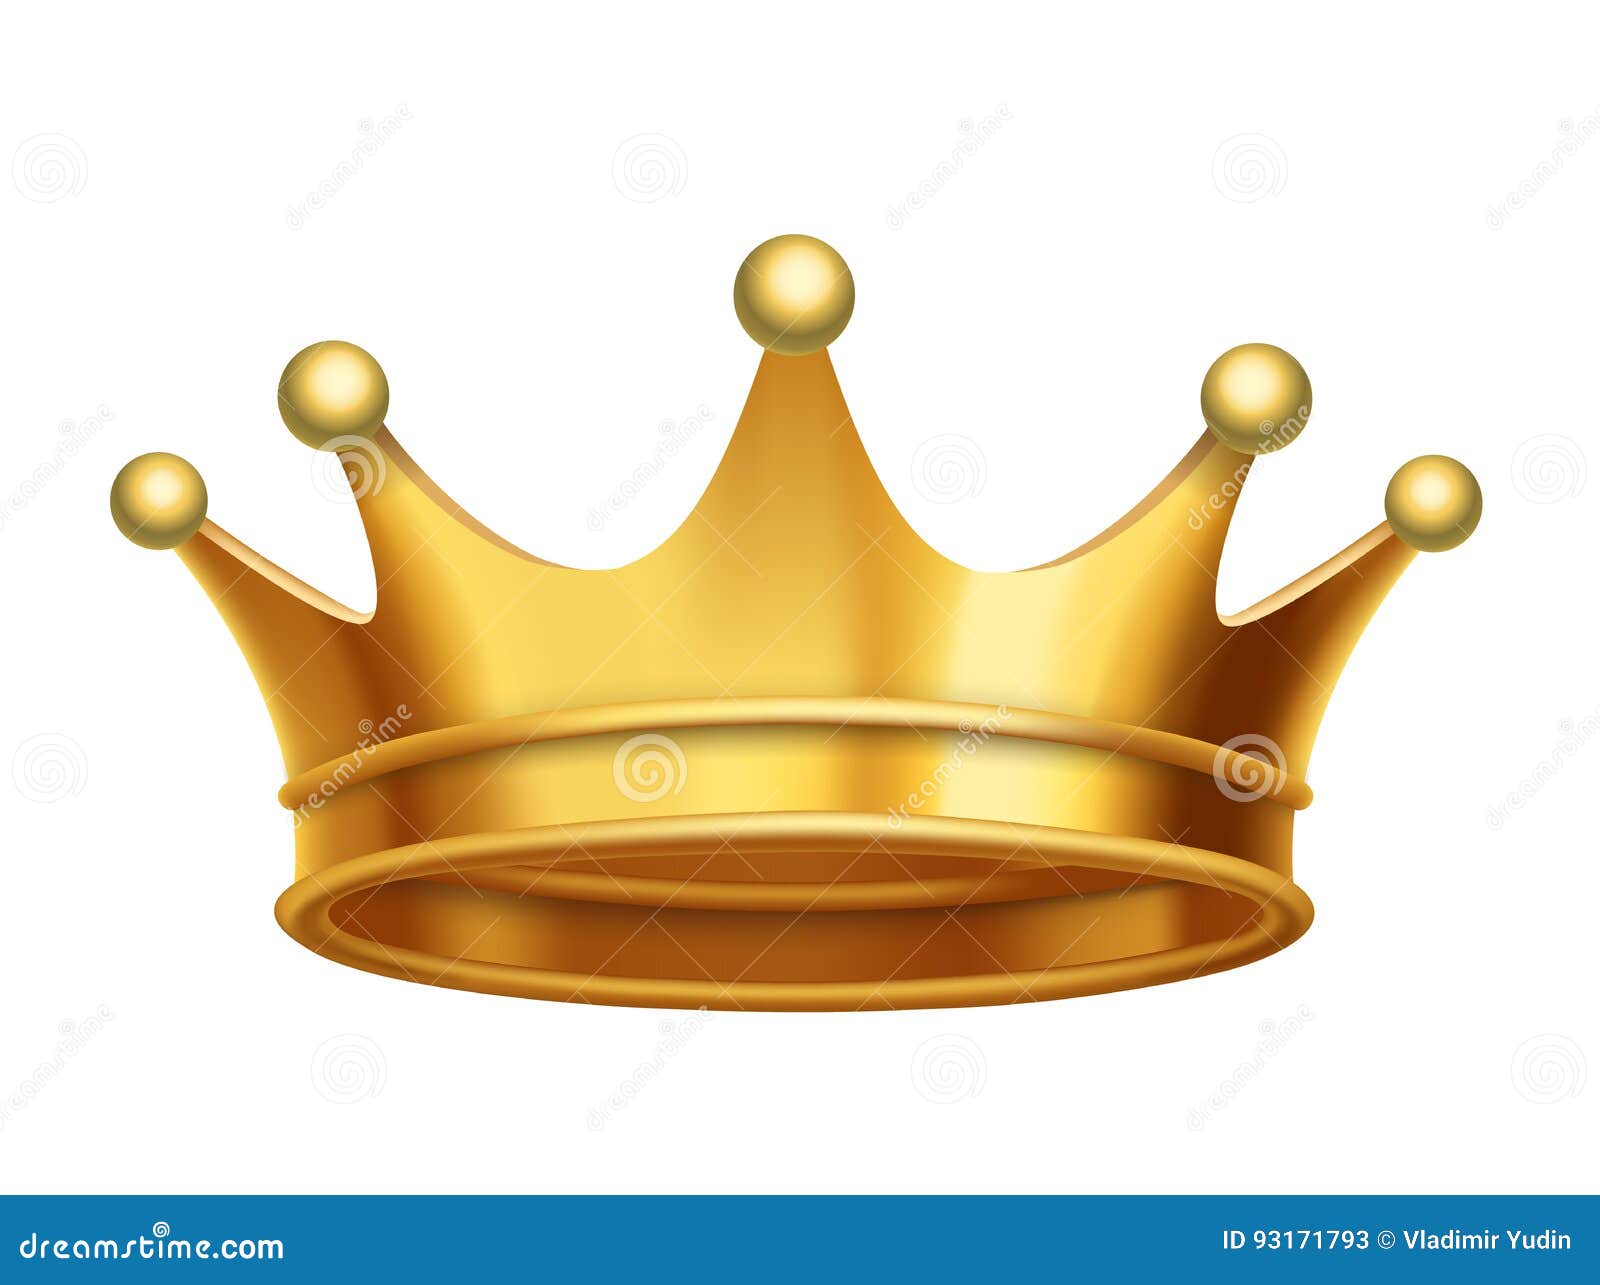  king crown gold